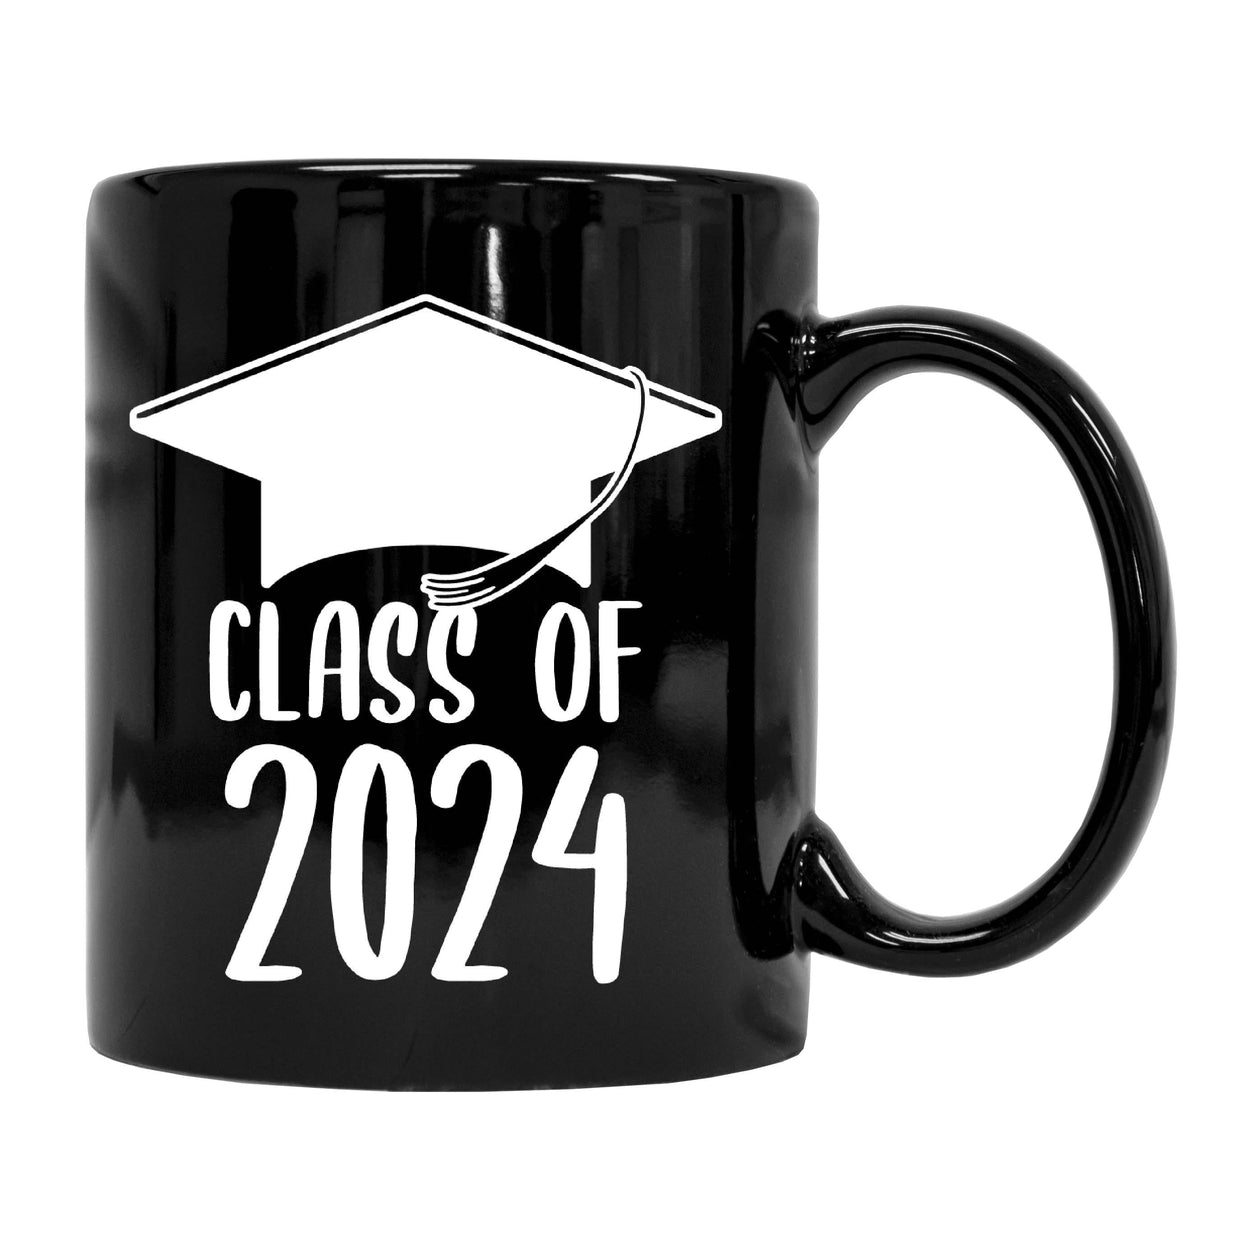 Class of 2024 Graduation 12 oz Ceramic Coffee Mug Black